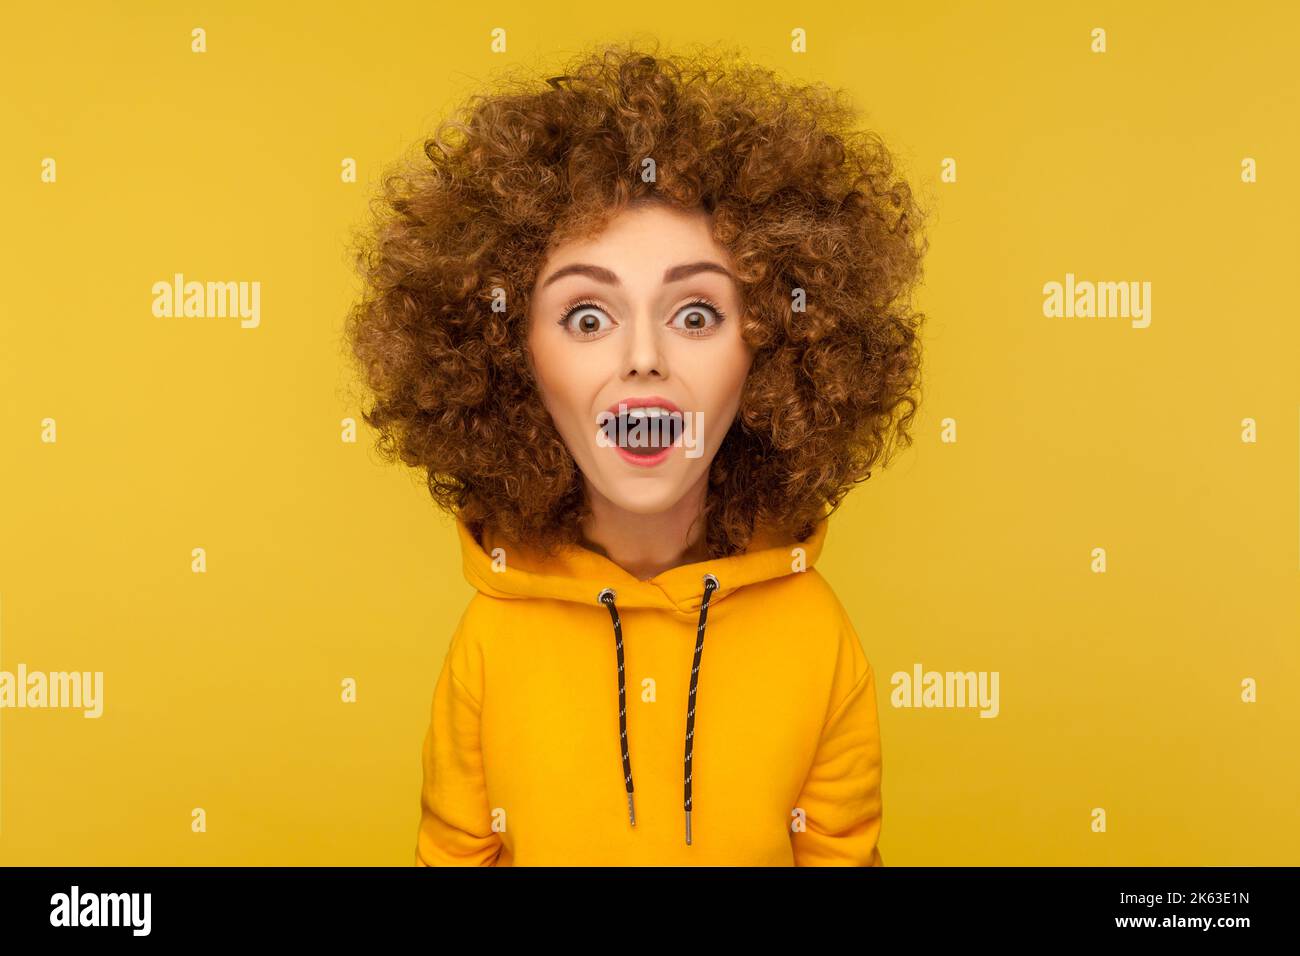 Wow, unglaublich. Comic-Porträt von schockiert überrascht lustige Frau mit Afro-Frisur Blick auf die Kamera mit offenem Mund und erstaunt großen Augen. Innenaufnahme des Studios isoliert auf gelbem Hintergrund. Stockfoto